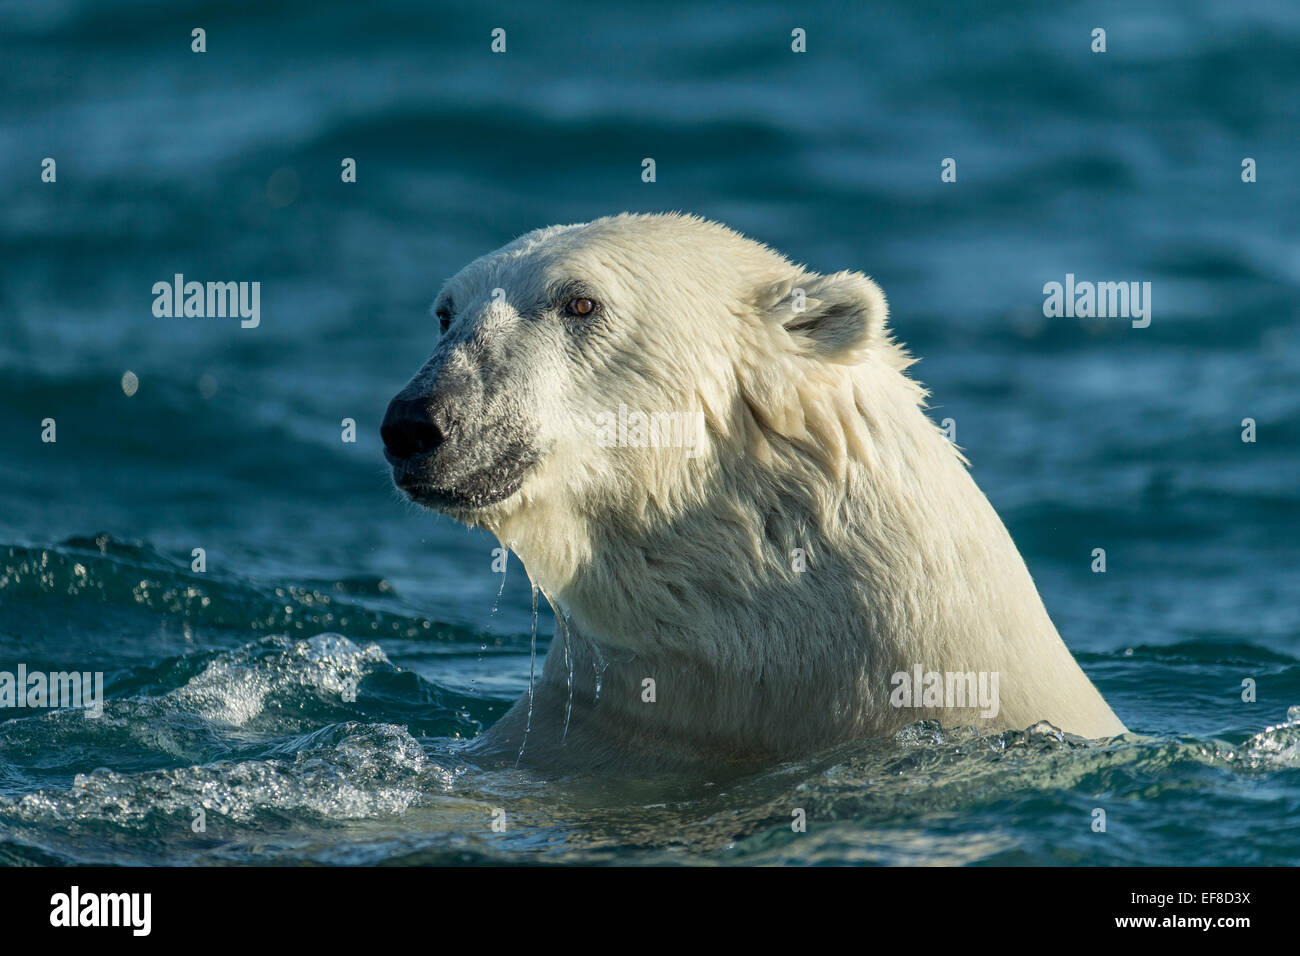 Canada, Nunavut Territorio, Repulse Bay, orso polare (Ursus maritimus) nuotare nella baia di Hudson in mattinata estiva Foto Stock